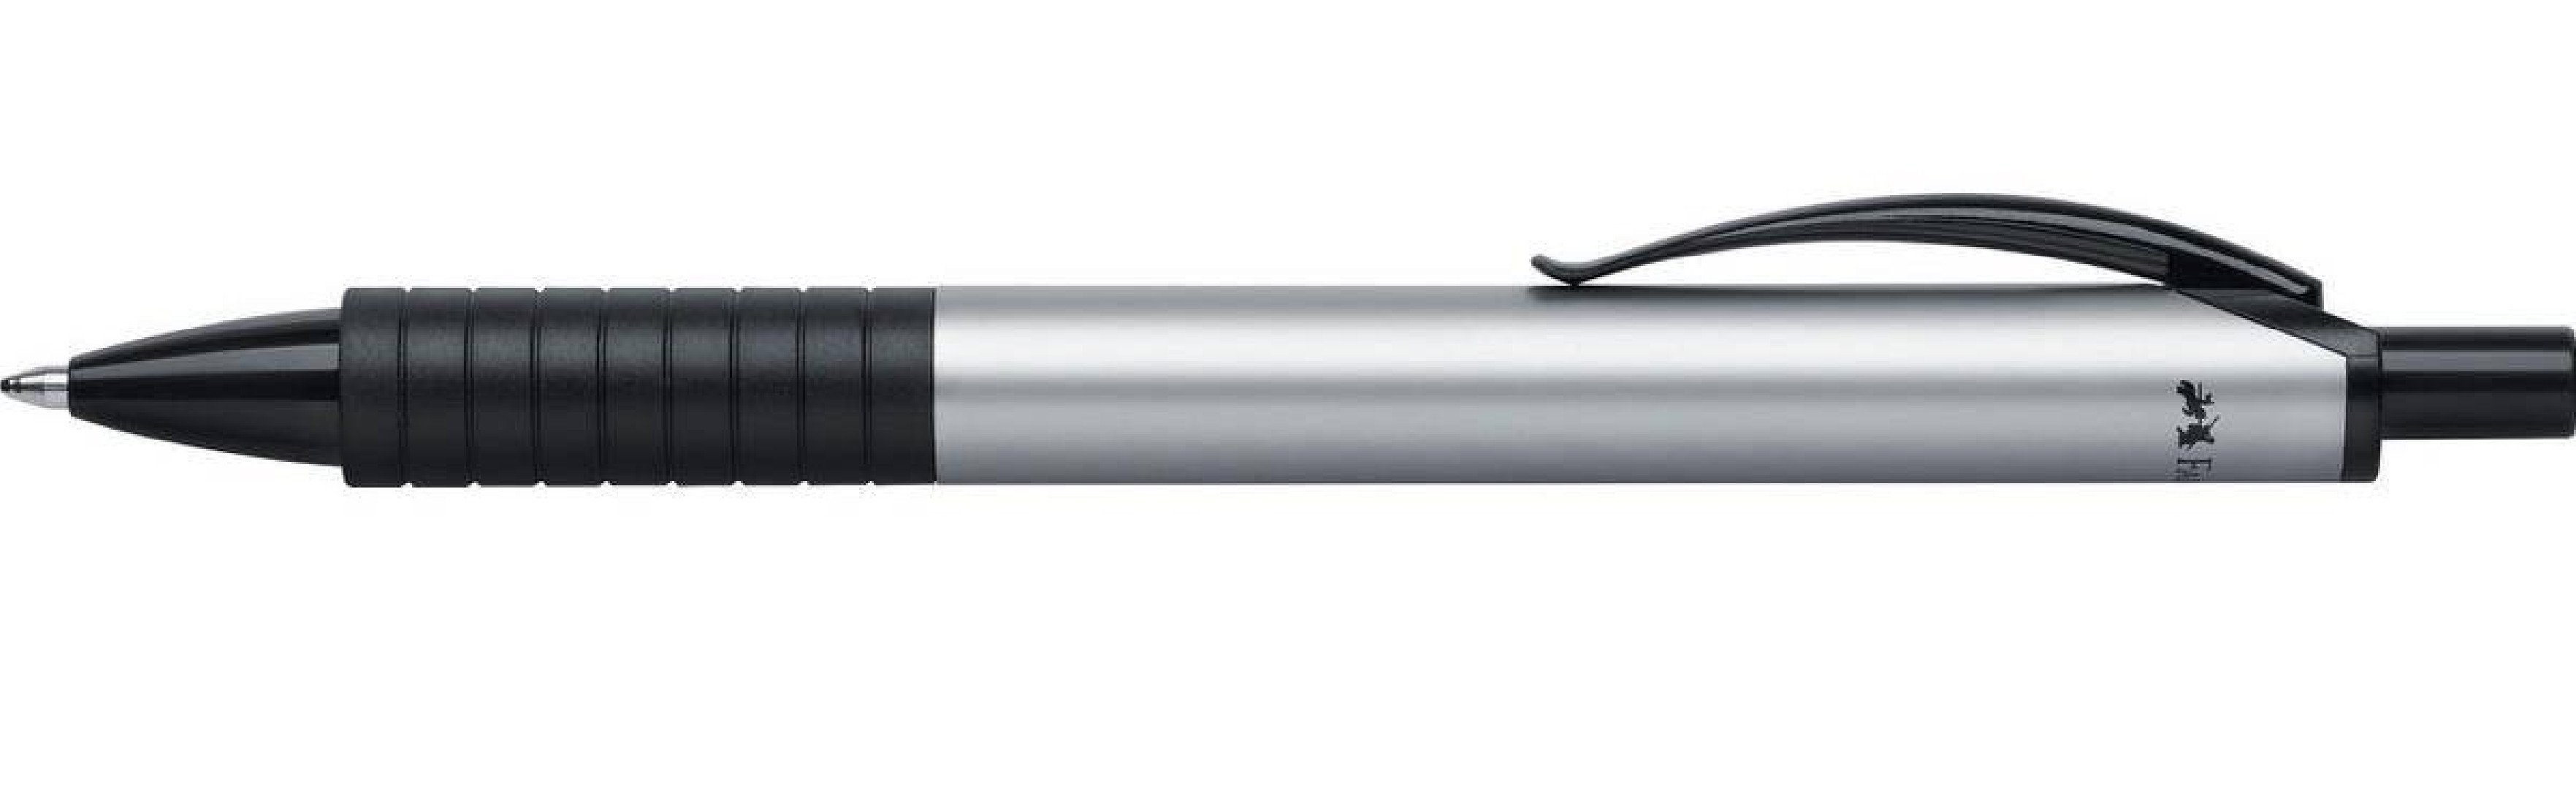 Faber Castell ballpoint Pen Basic M silver 143411